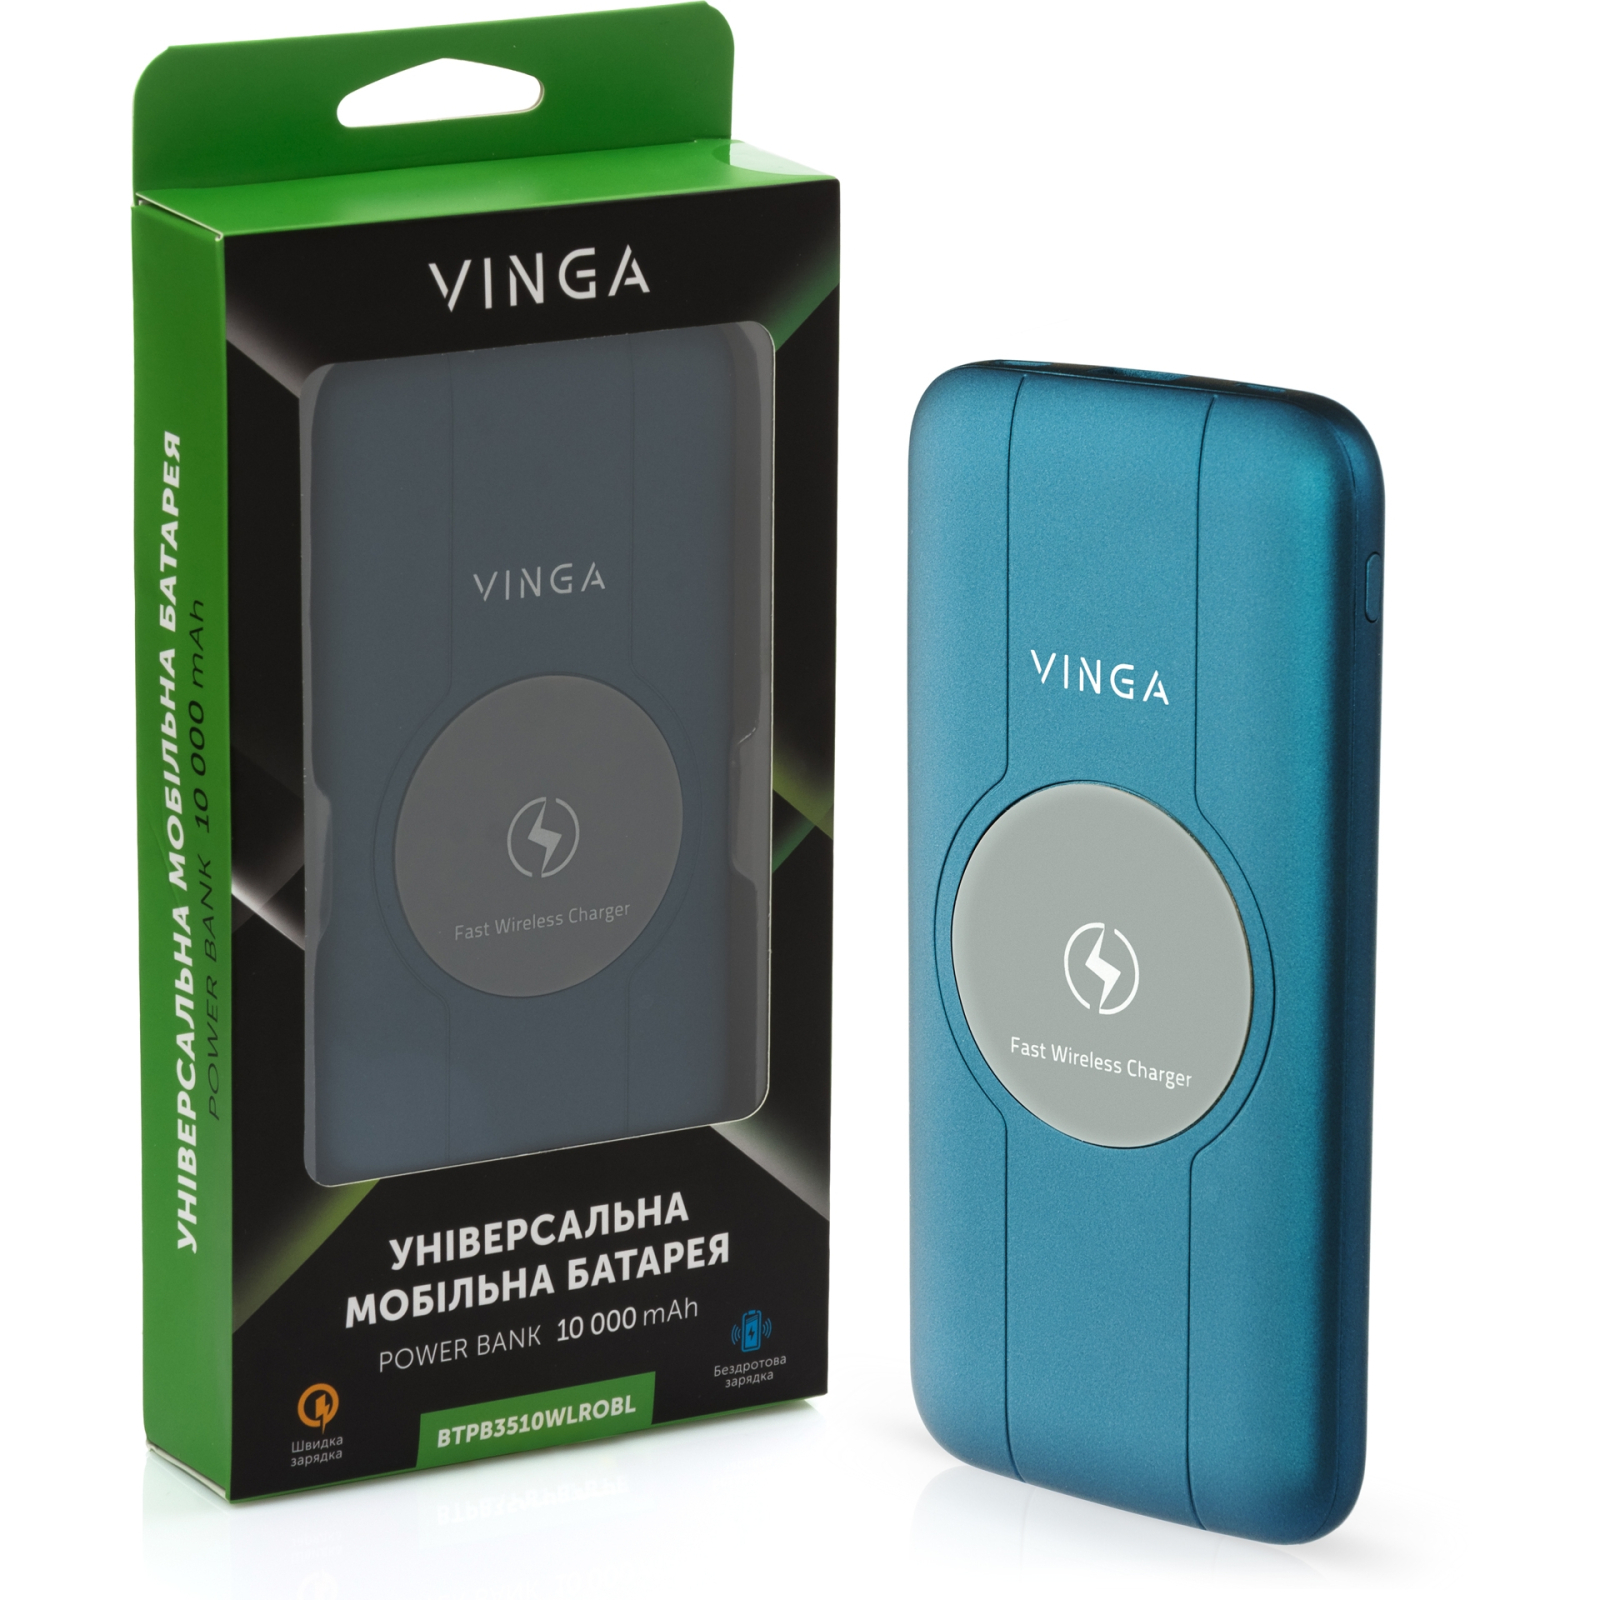 Батарея універсальна Vinga 10000 mAh Wireless QC3.0 PD soft touch blue (BTPB3510WLROBL) зображення 5